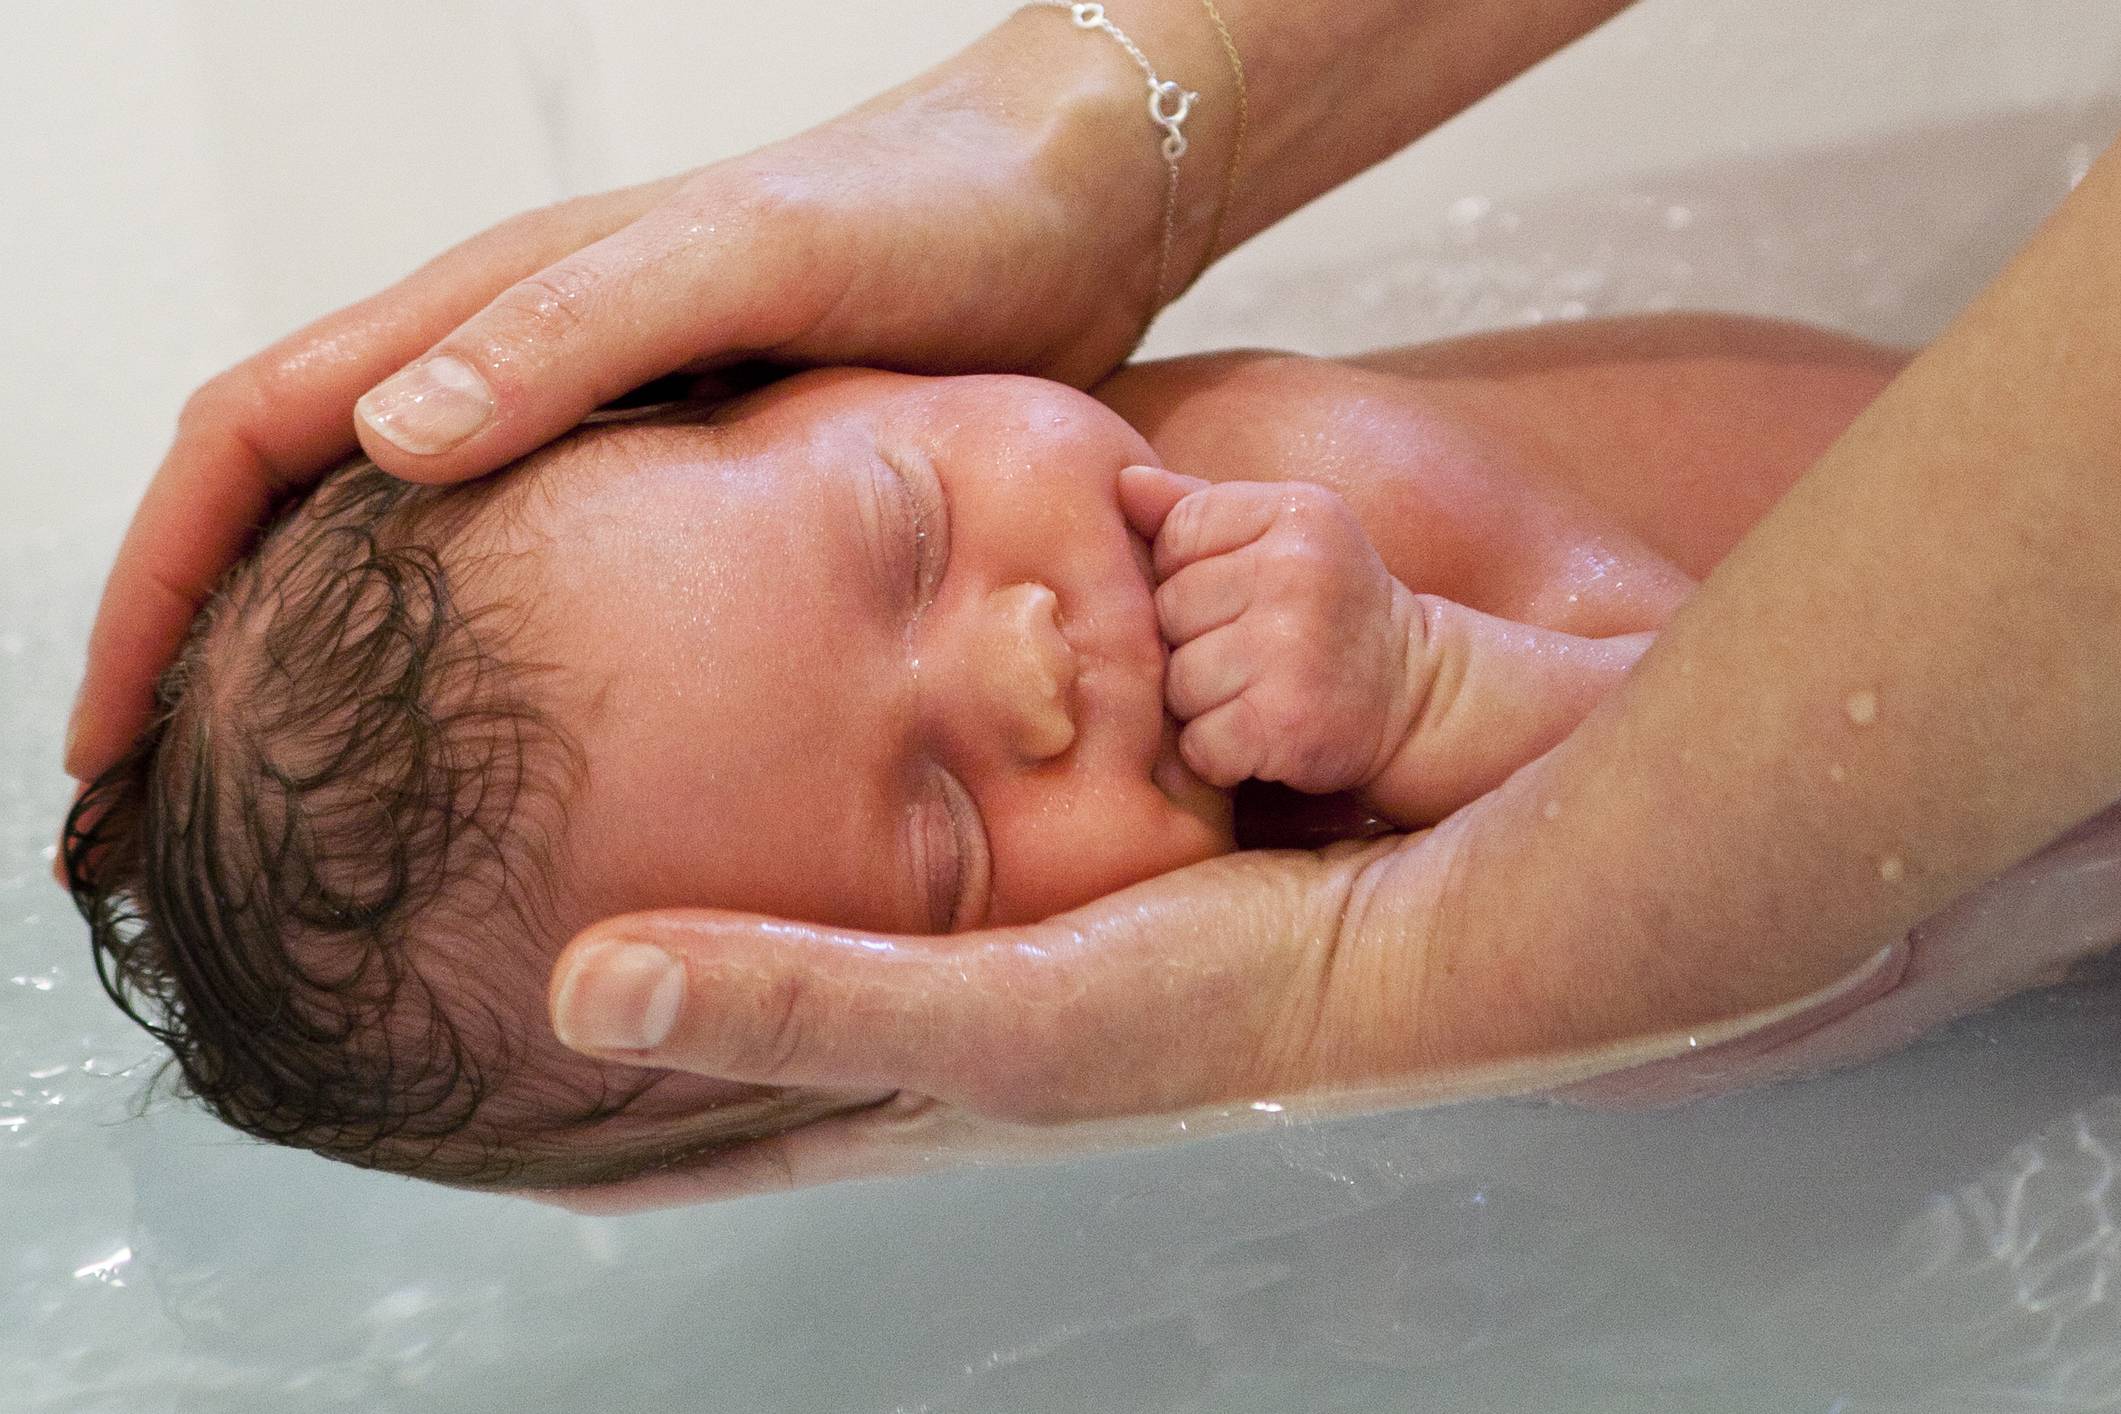 Как мыть голову новорожденному ребенку